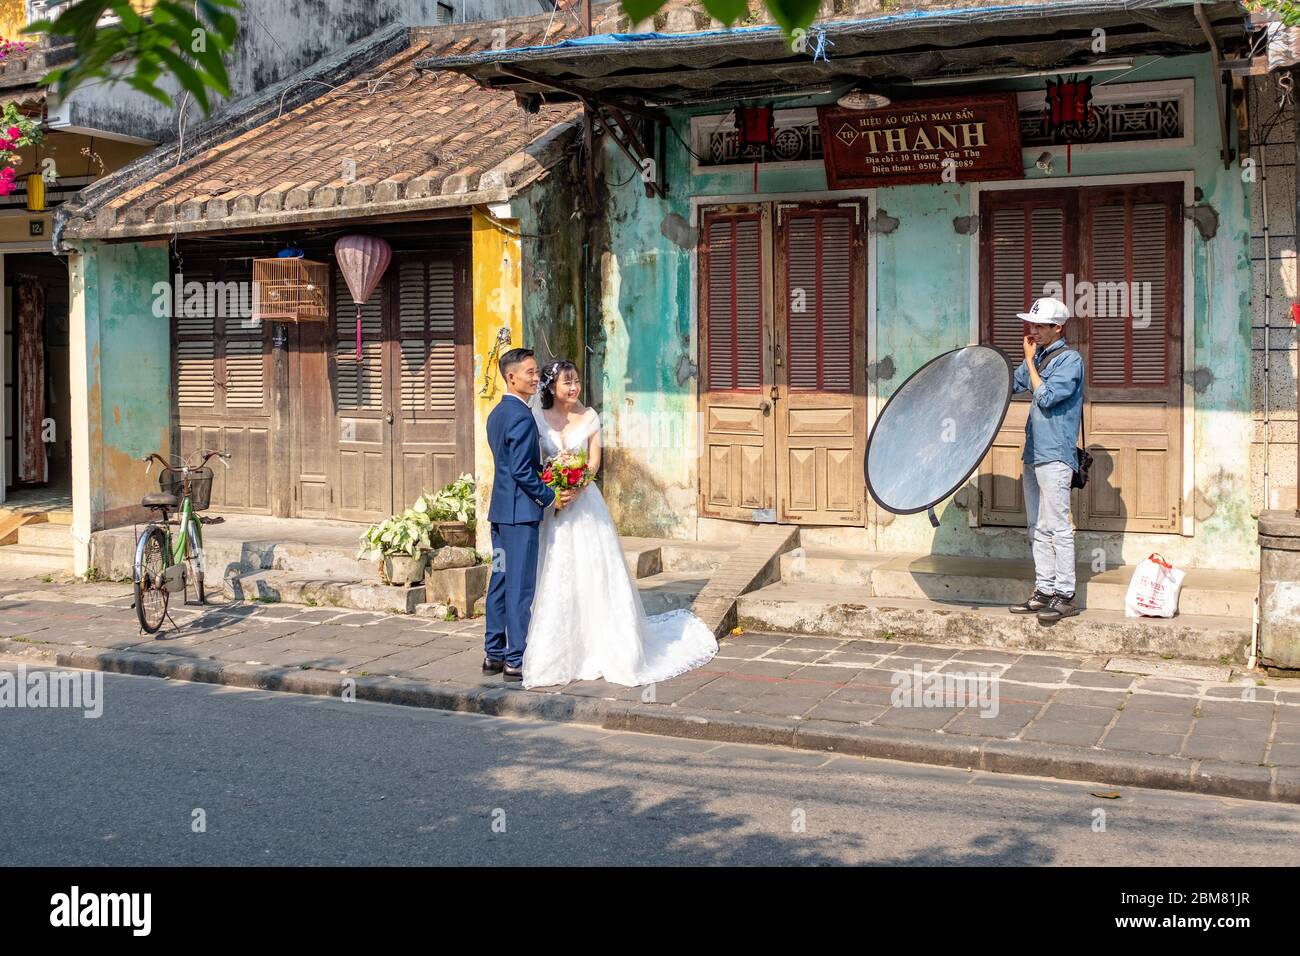 Hoi an, Vietnam - 12 avril 2018: Séance de photos et couple asiatique en tenue de mariage dans une rue de Hoi an avec un technicien tenant un réflecteur Banque D'Images